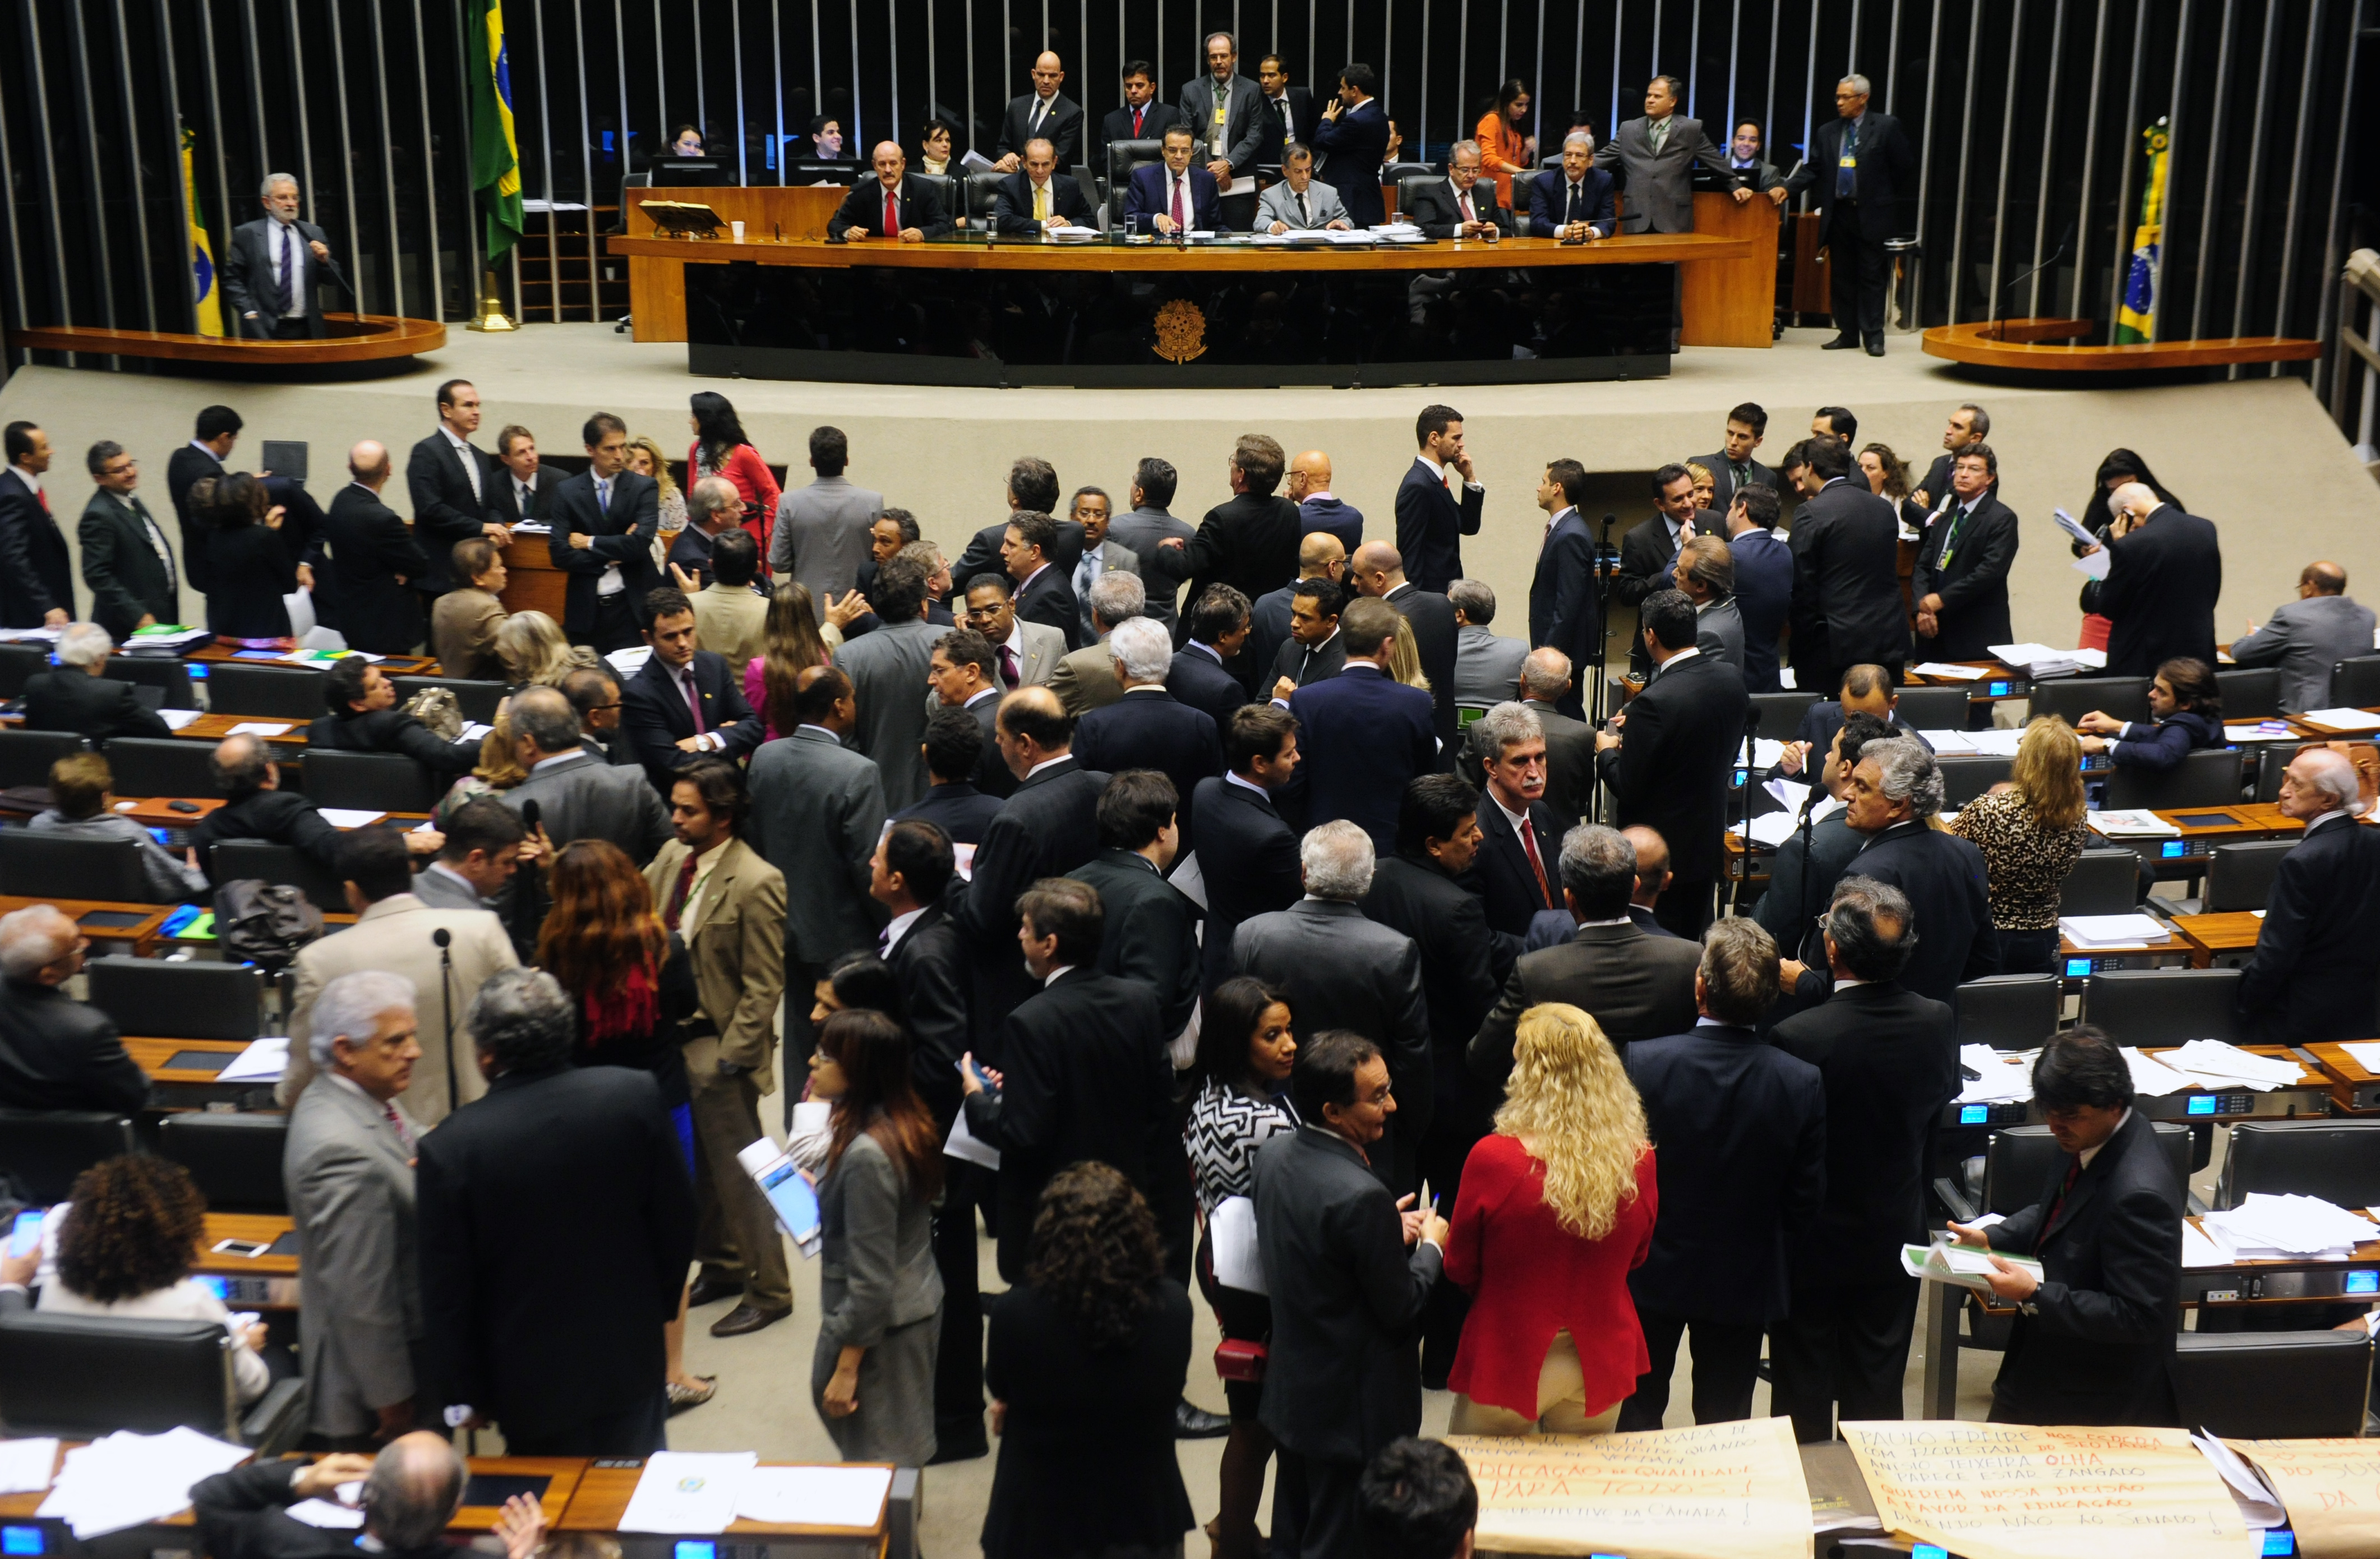 Câmara realiza 218 sessões e aprova 84 proposições em Plenário no primeiro semestre.